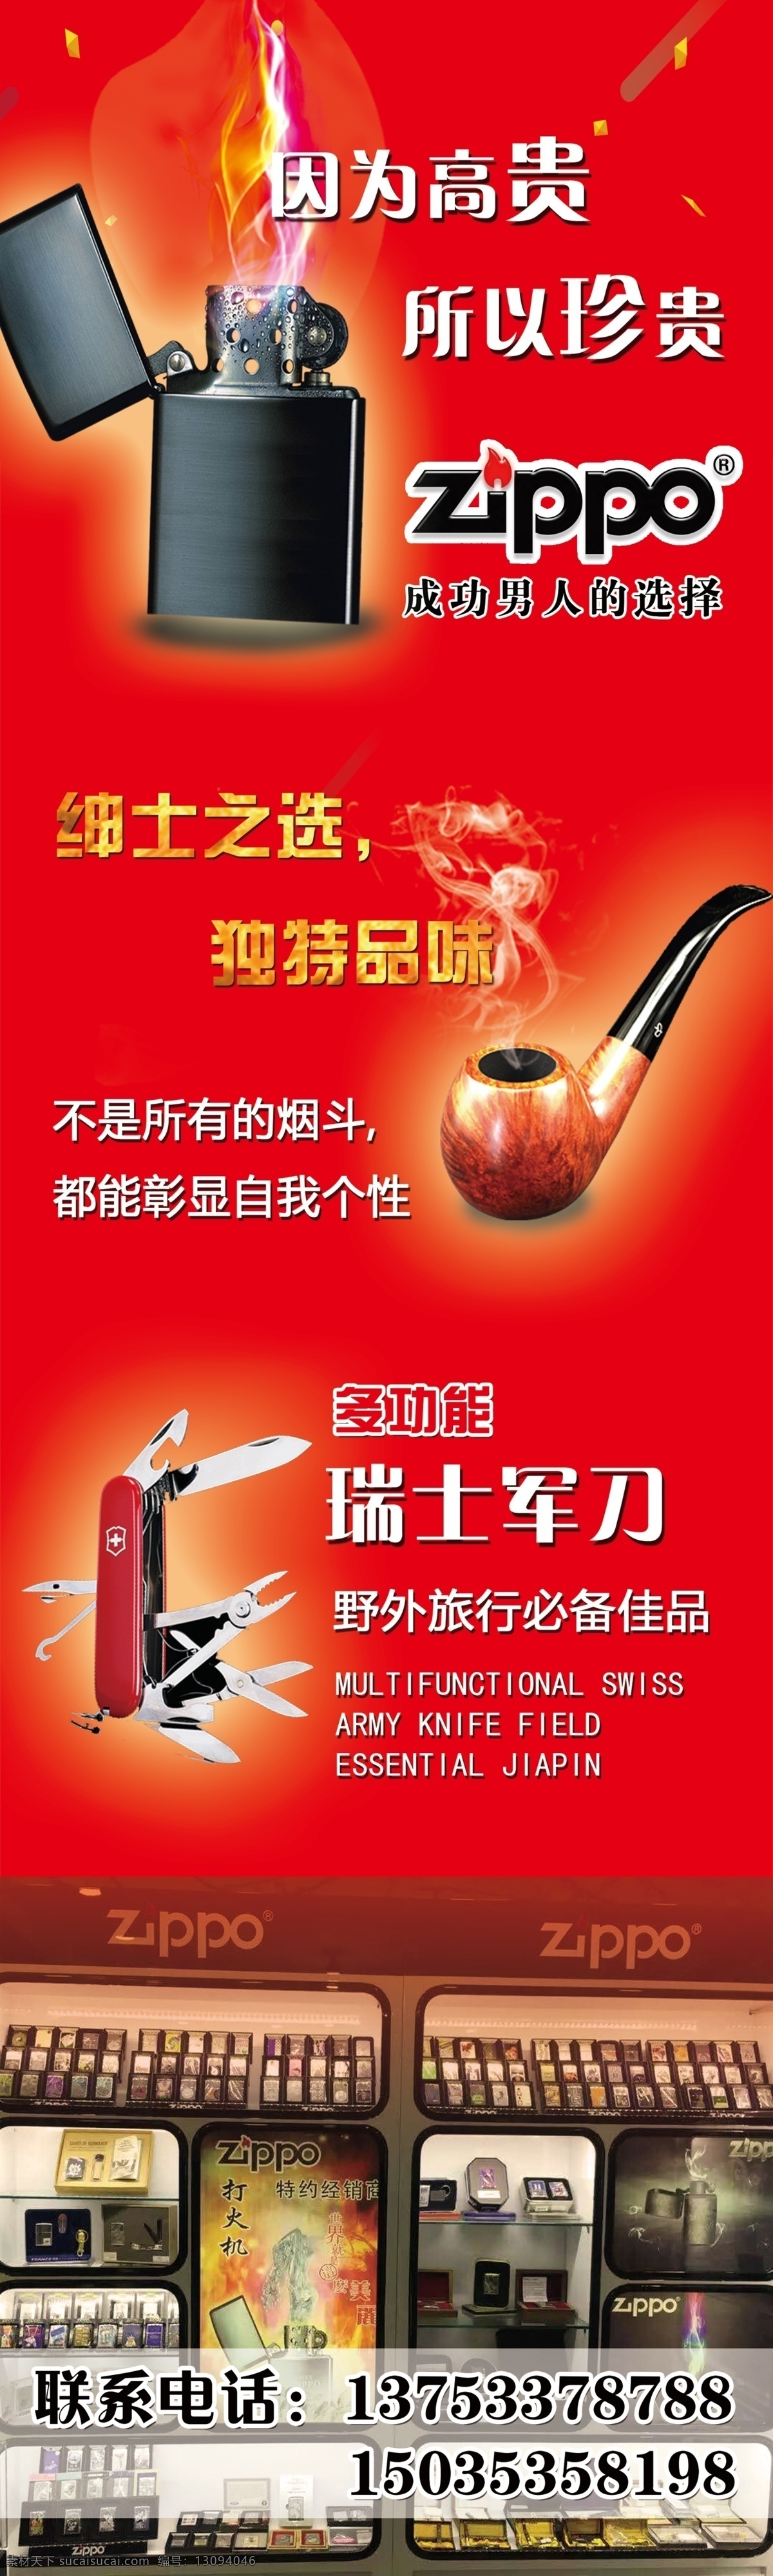 产品宣传展架 产品宣传 展架 打火机 烟斗 瑞士军刀 zippo 红色背景